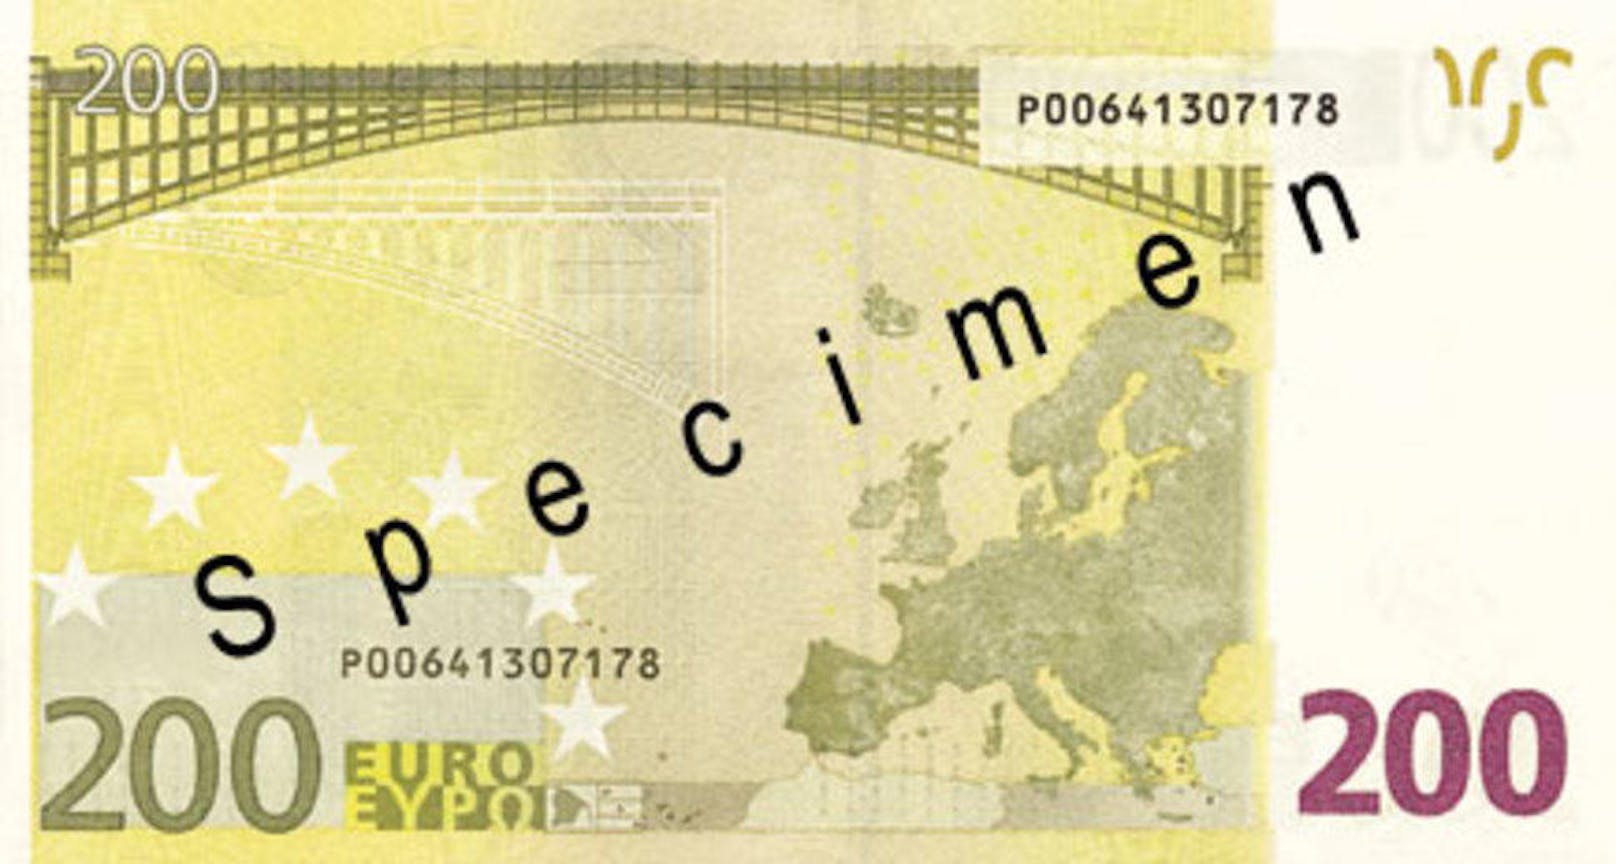 Auf der Rückseite der Banknote sieht man eine Eisenbahnbrücke, wie sie in dieser Form zu Beginn des 20. Jahrhunderts überall in Europa gebaut wurde.